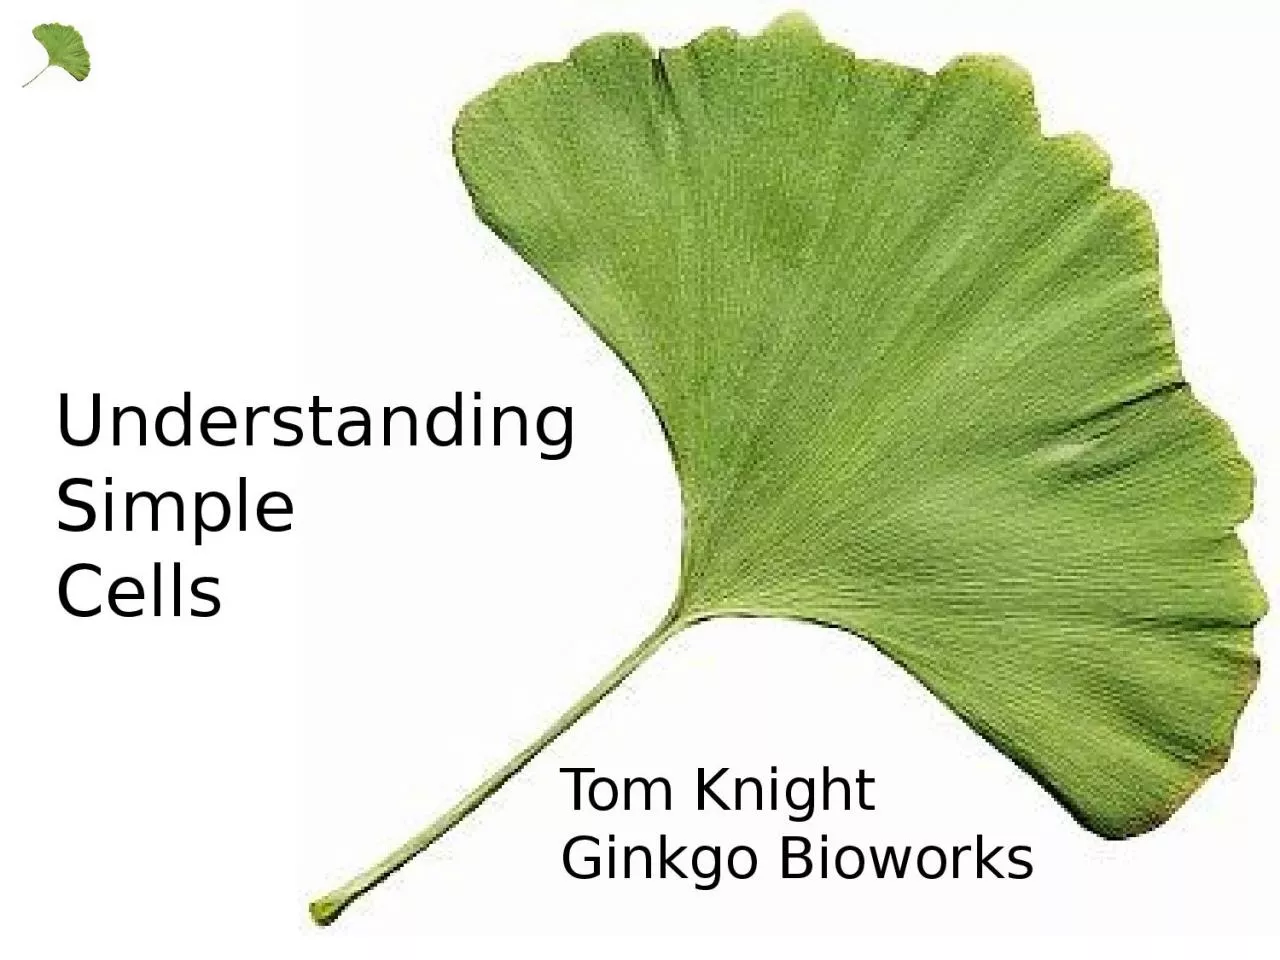 Tom Knight Ginkgo Bioworks